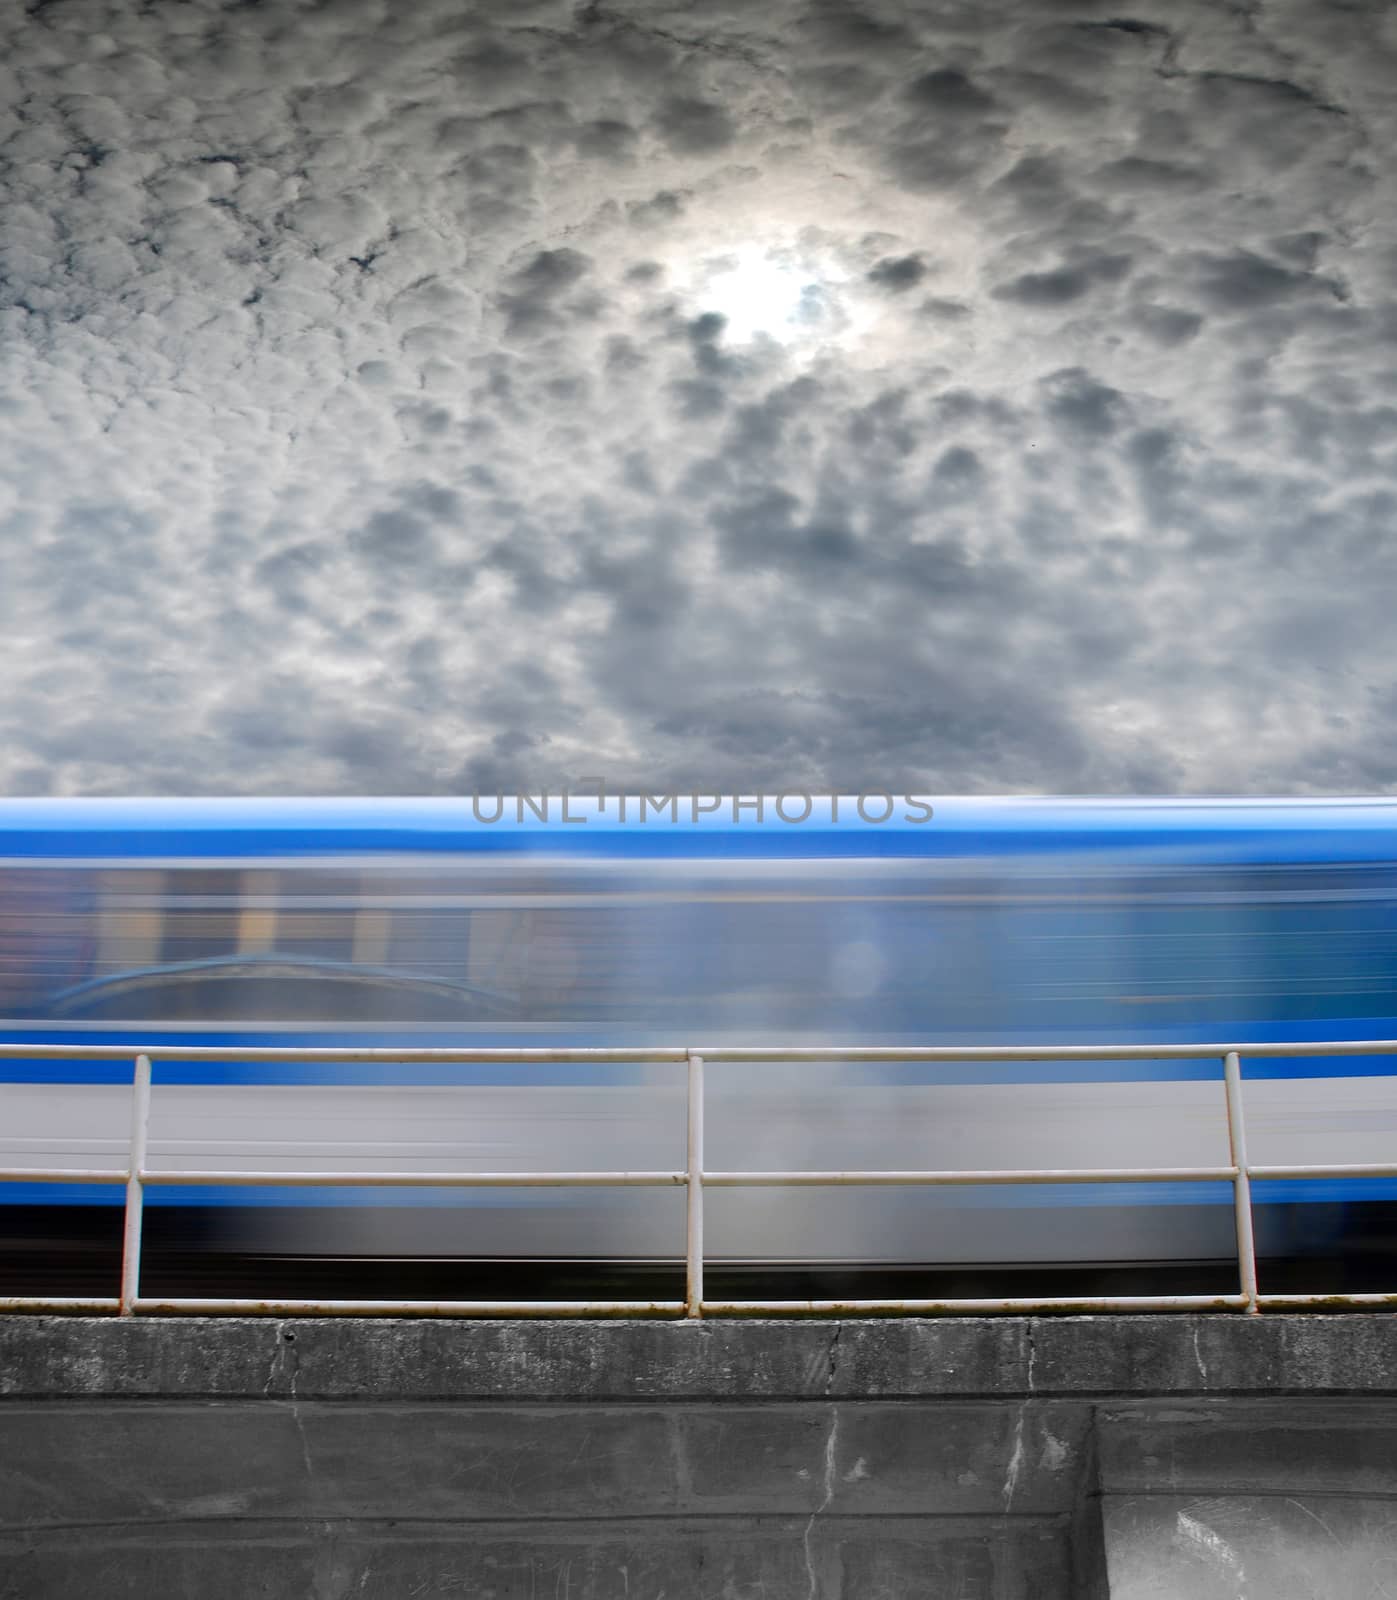 speeding train, a blurred line under gray skies